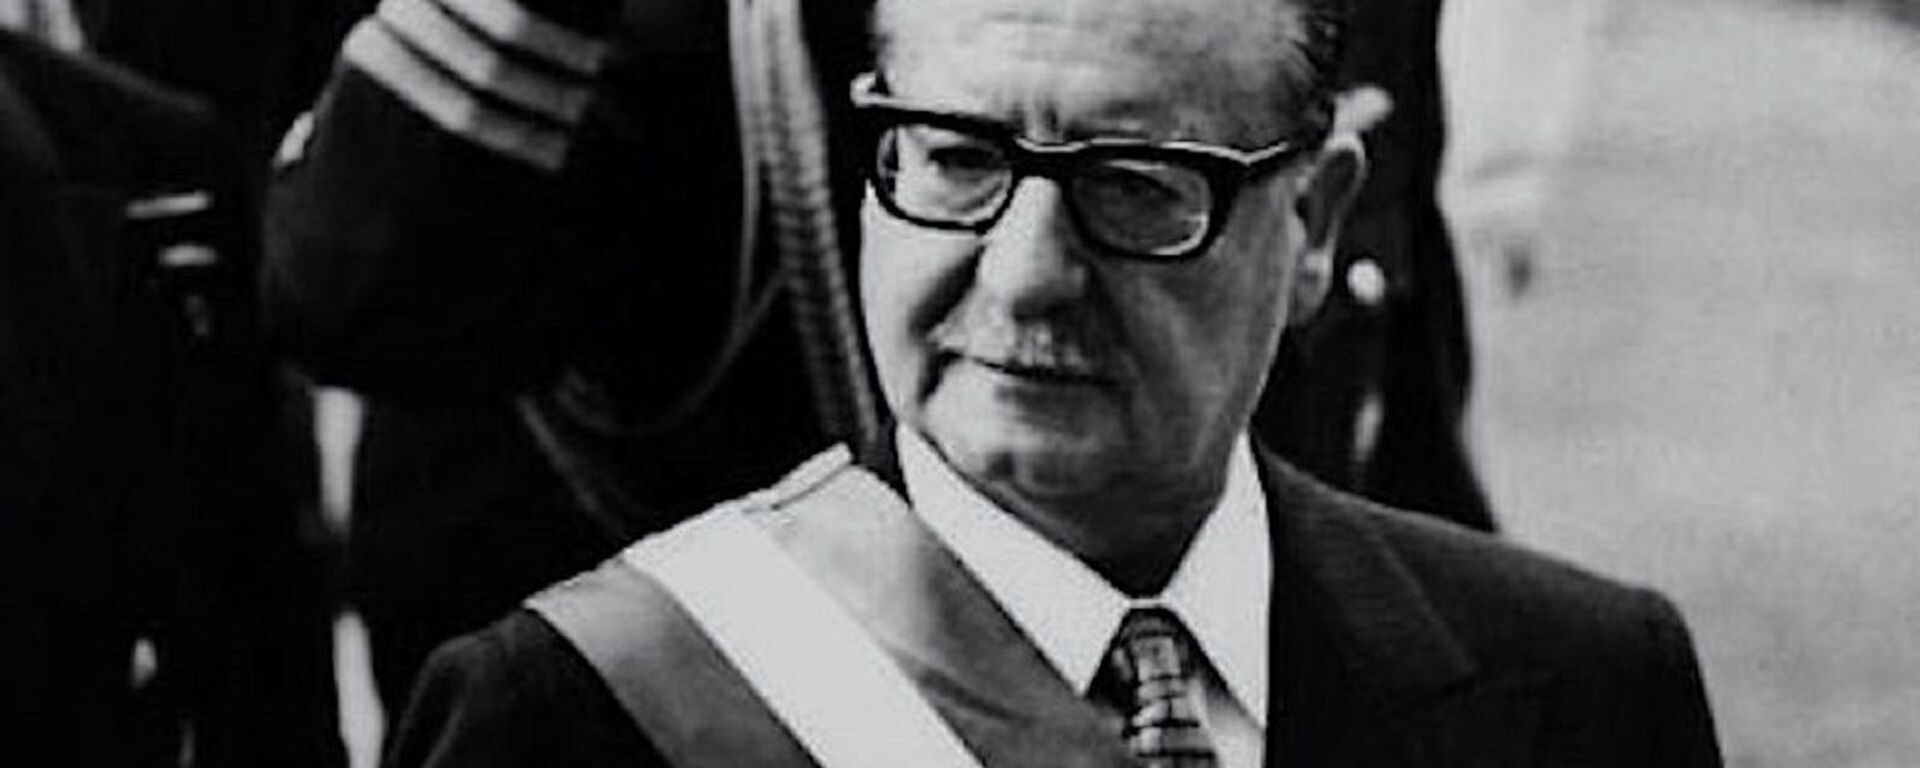 Salvador Allende, presidente chileno entre 1970 y 1973 - Sputnik Mundo, 1920, 04.09.2020